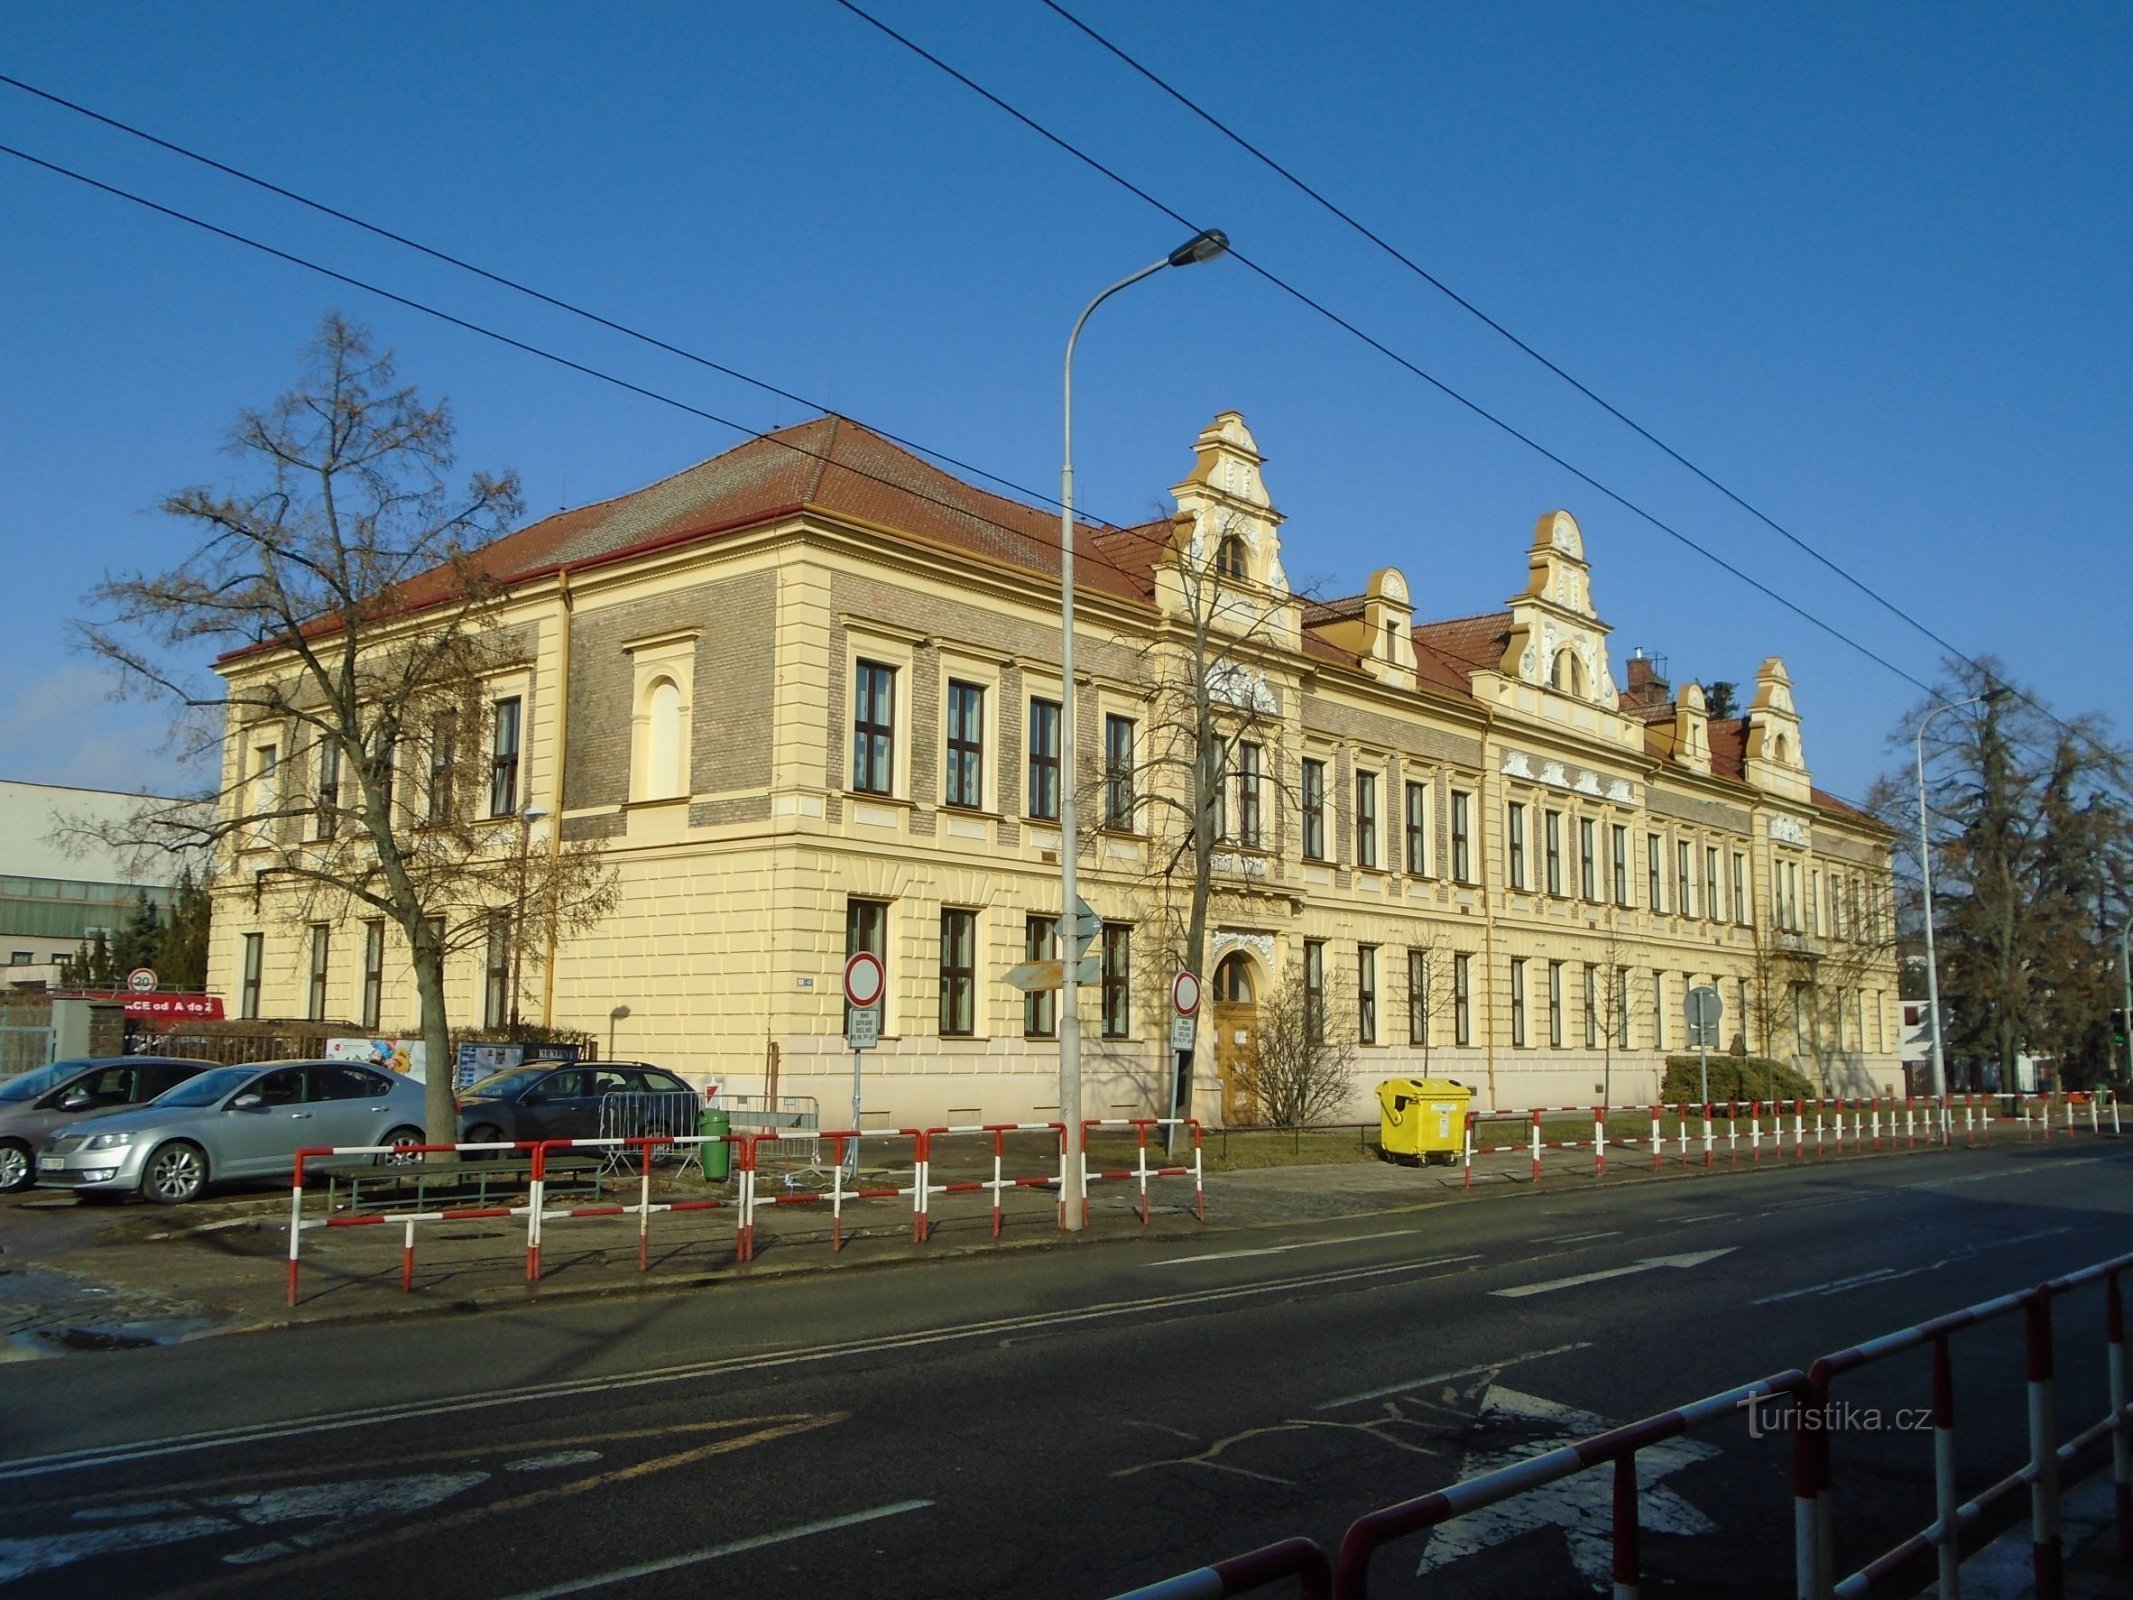 Diện mạo hiện tại của trường phổ thông ở Kukleny (Hradec Králové, ngày 8.2.2019 tháng XNUMX năm XNUMX)